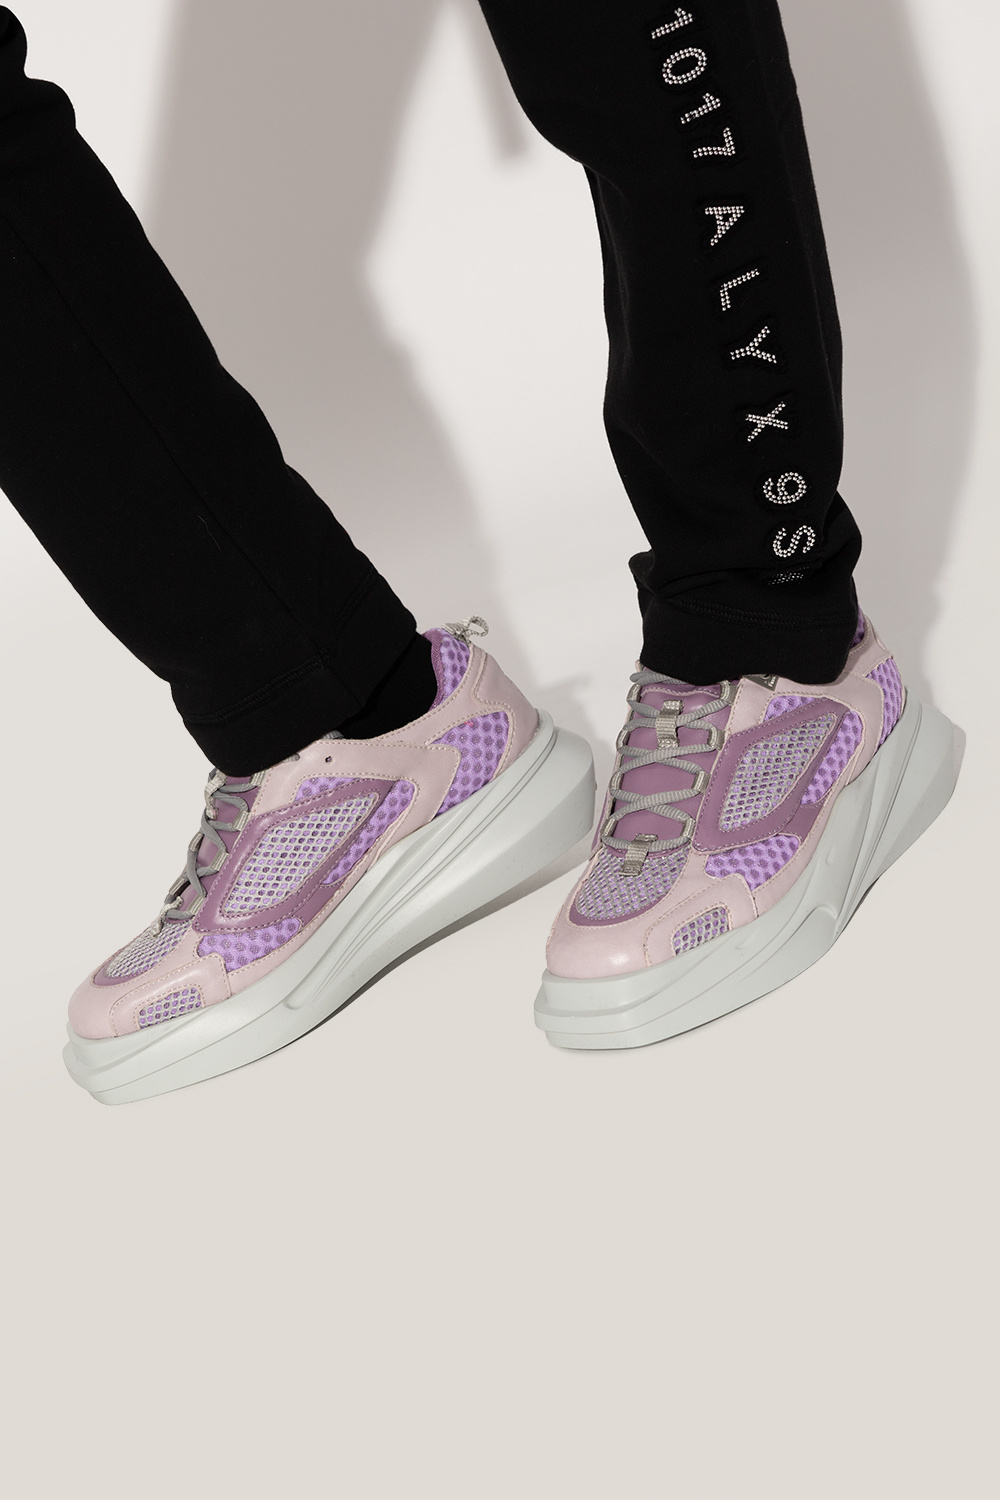 1017 ALYX 9SM ‘Mono Hiking’ sneakers